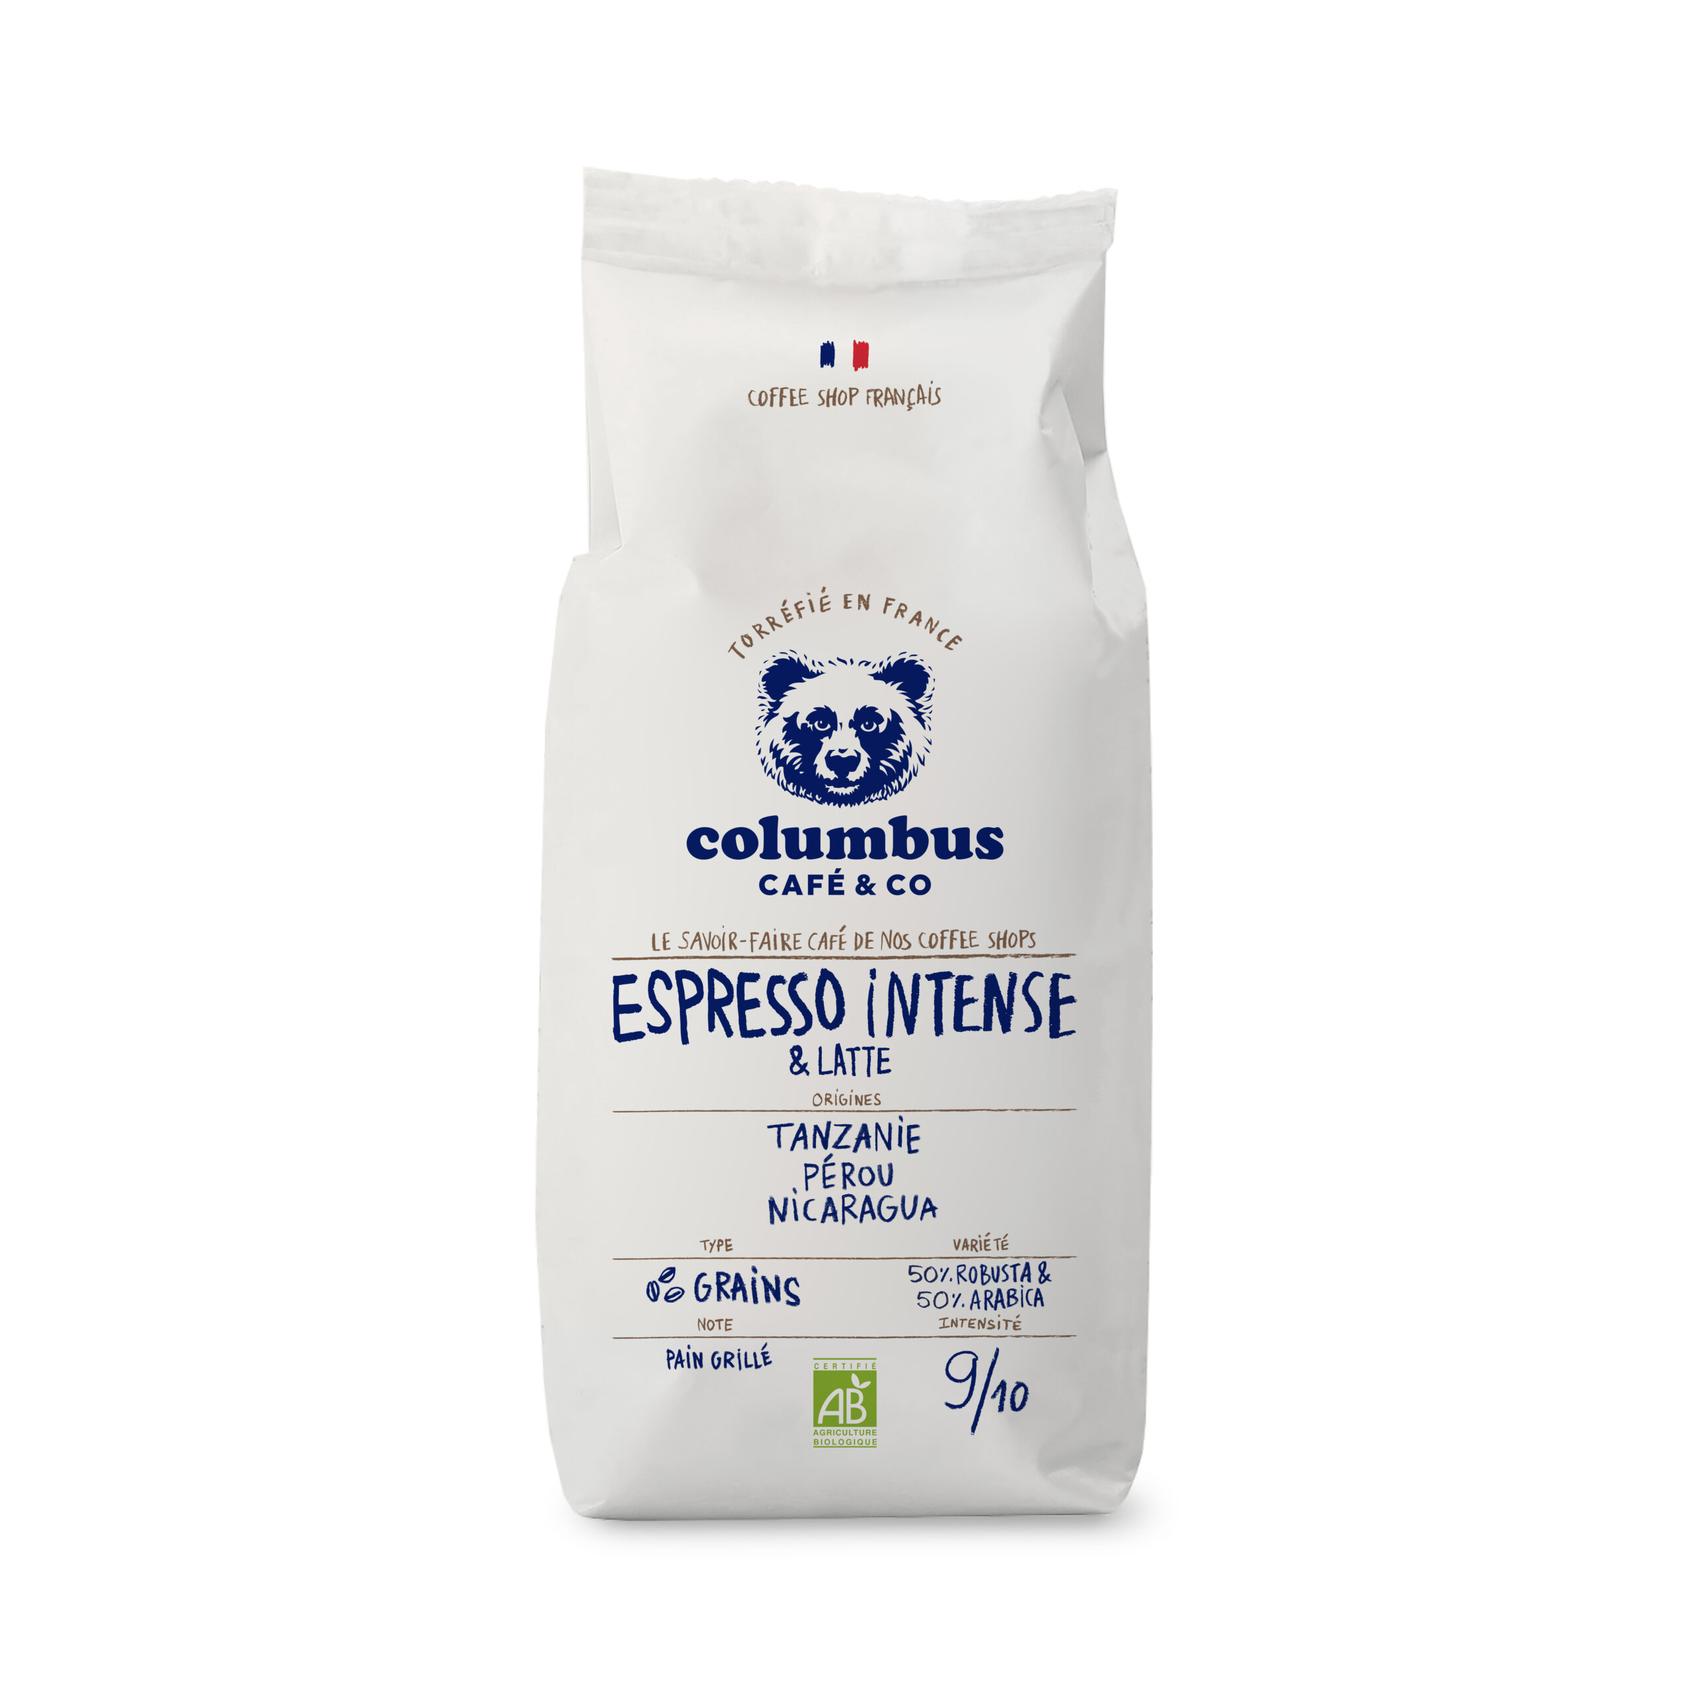 Café Grain Espresso spécial Intense & Latte 1 KG offre à 23,1€ sur Columbus Café